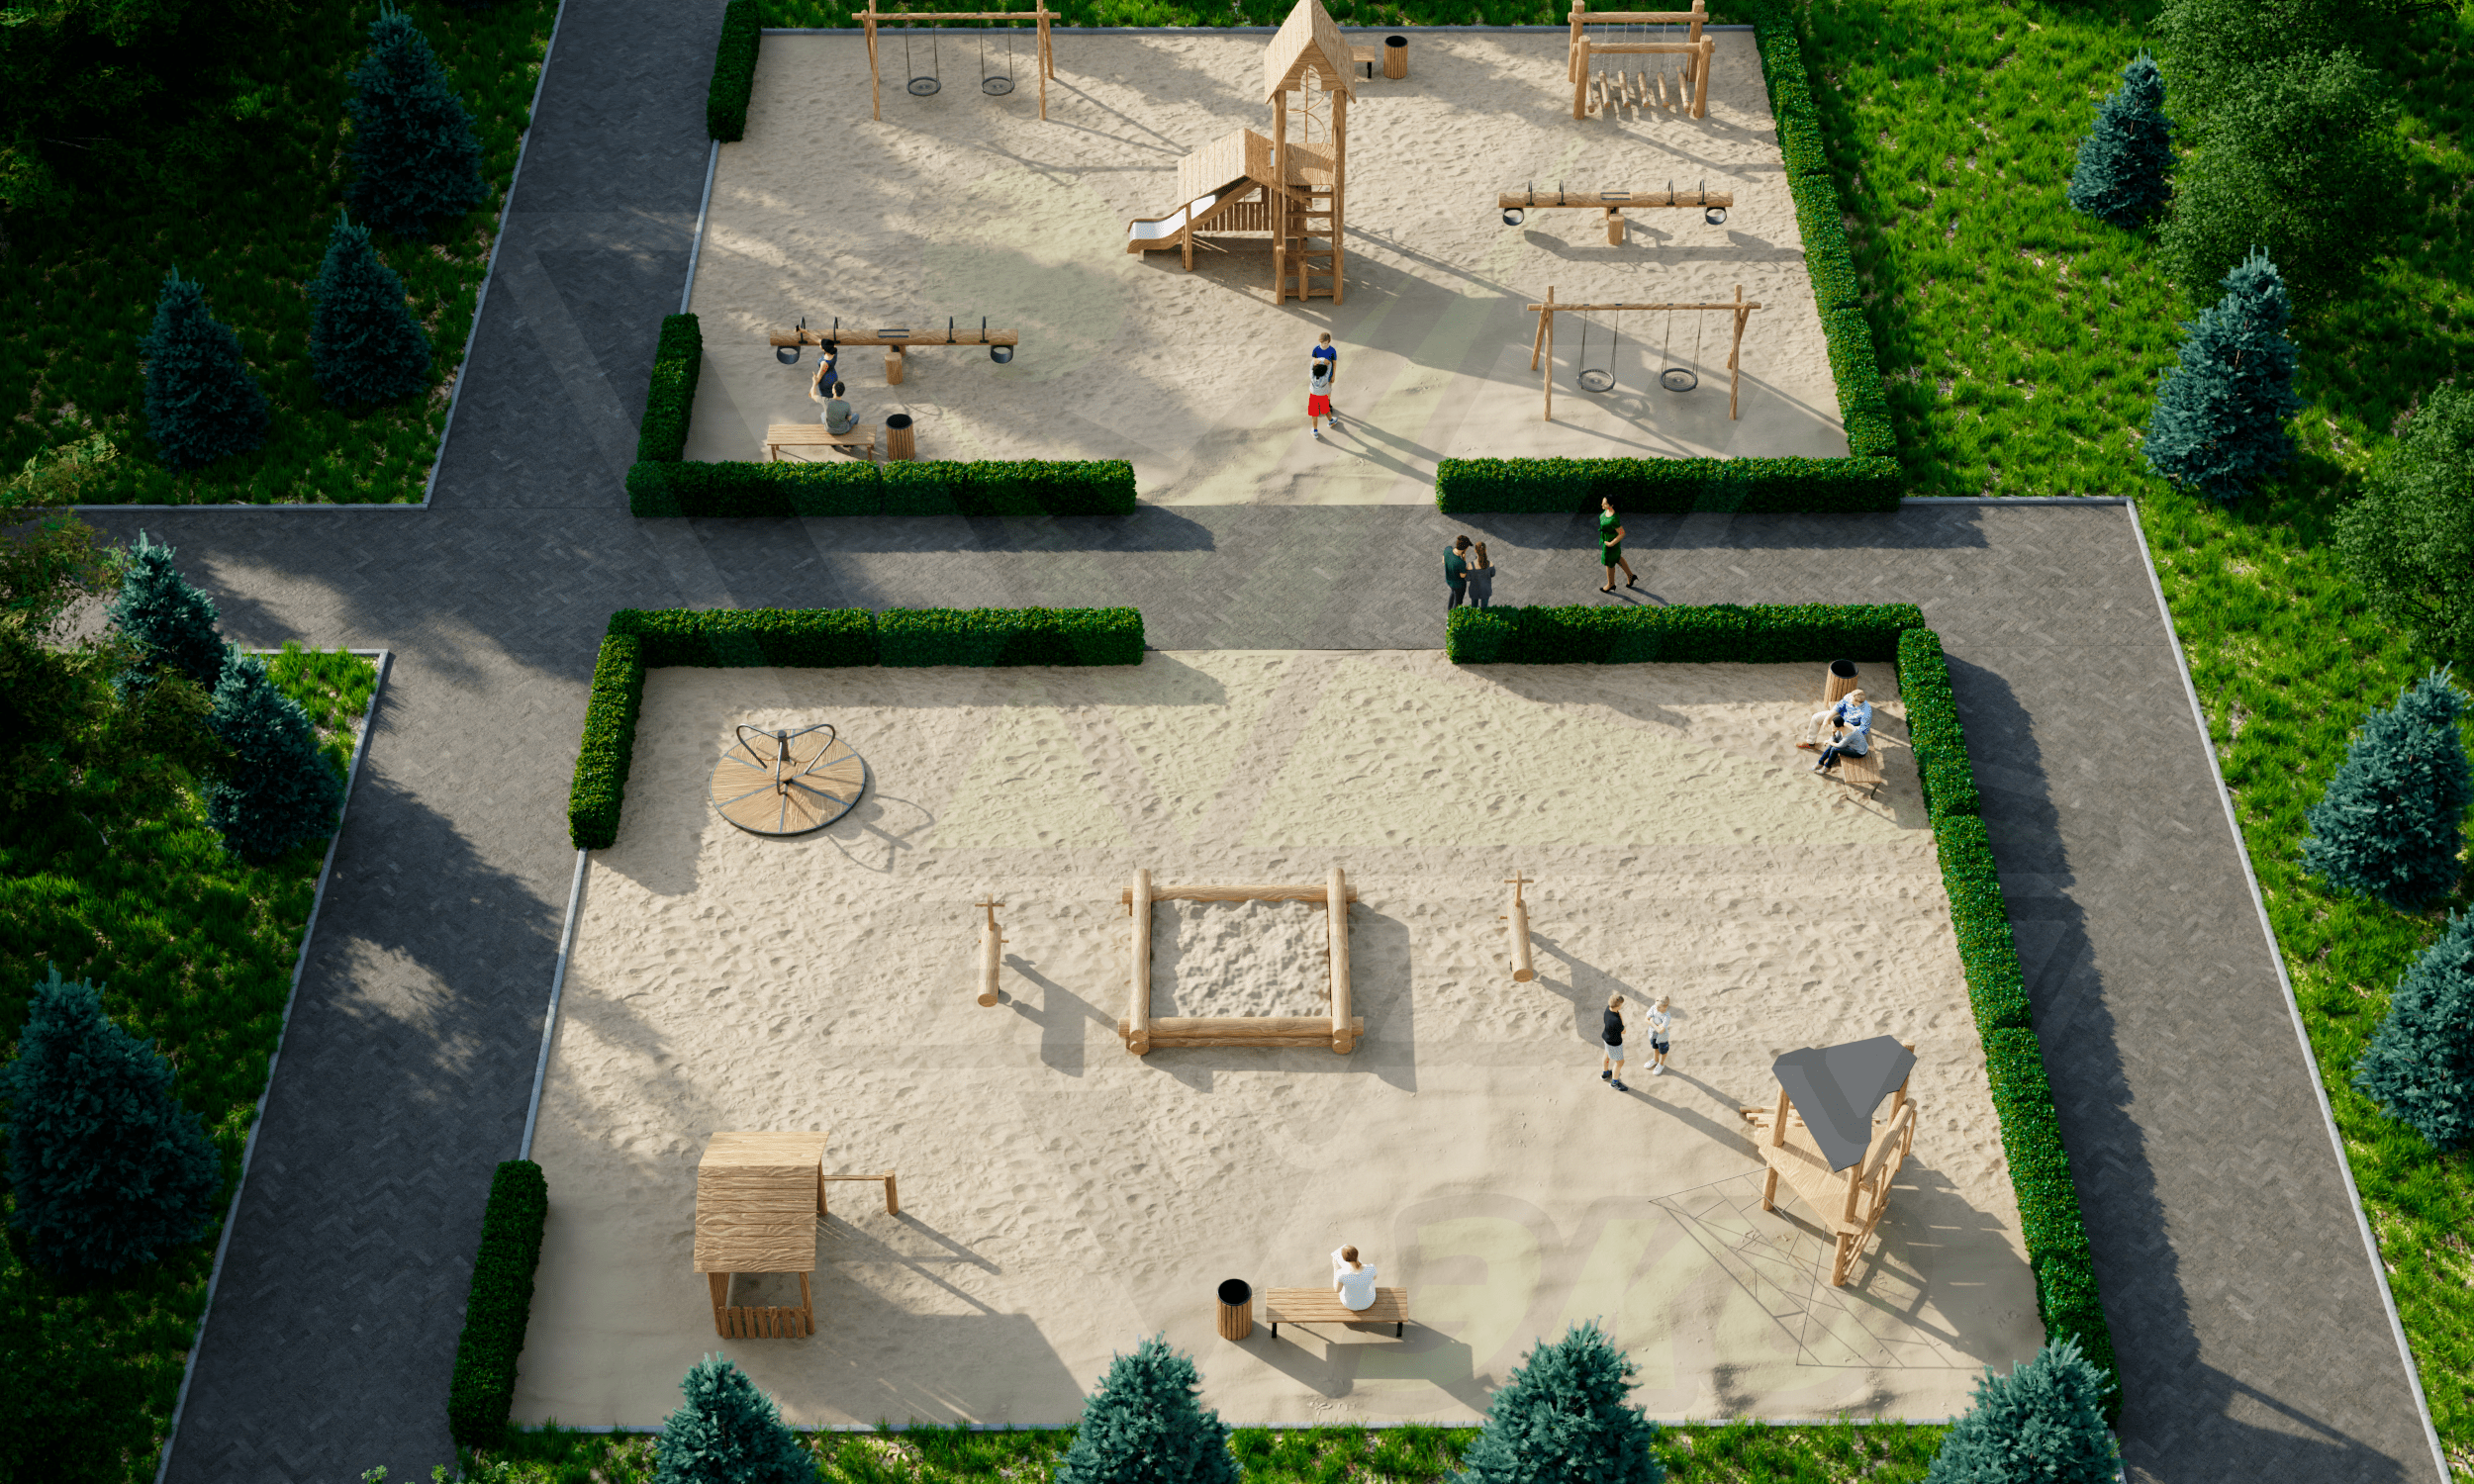 Дизайн проект детской площадки разделенной на две зоны по возрастному принципу